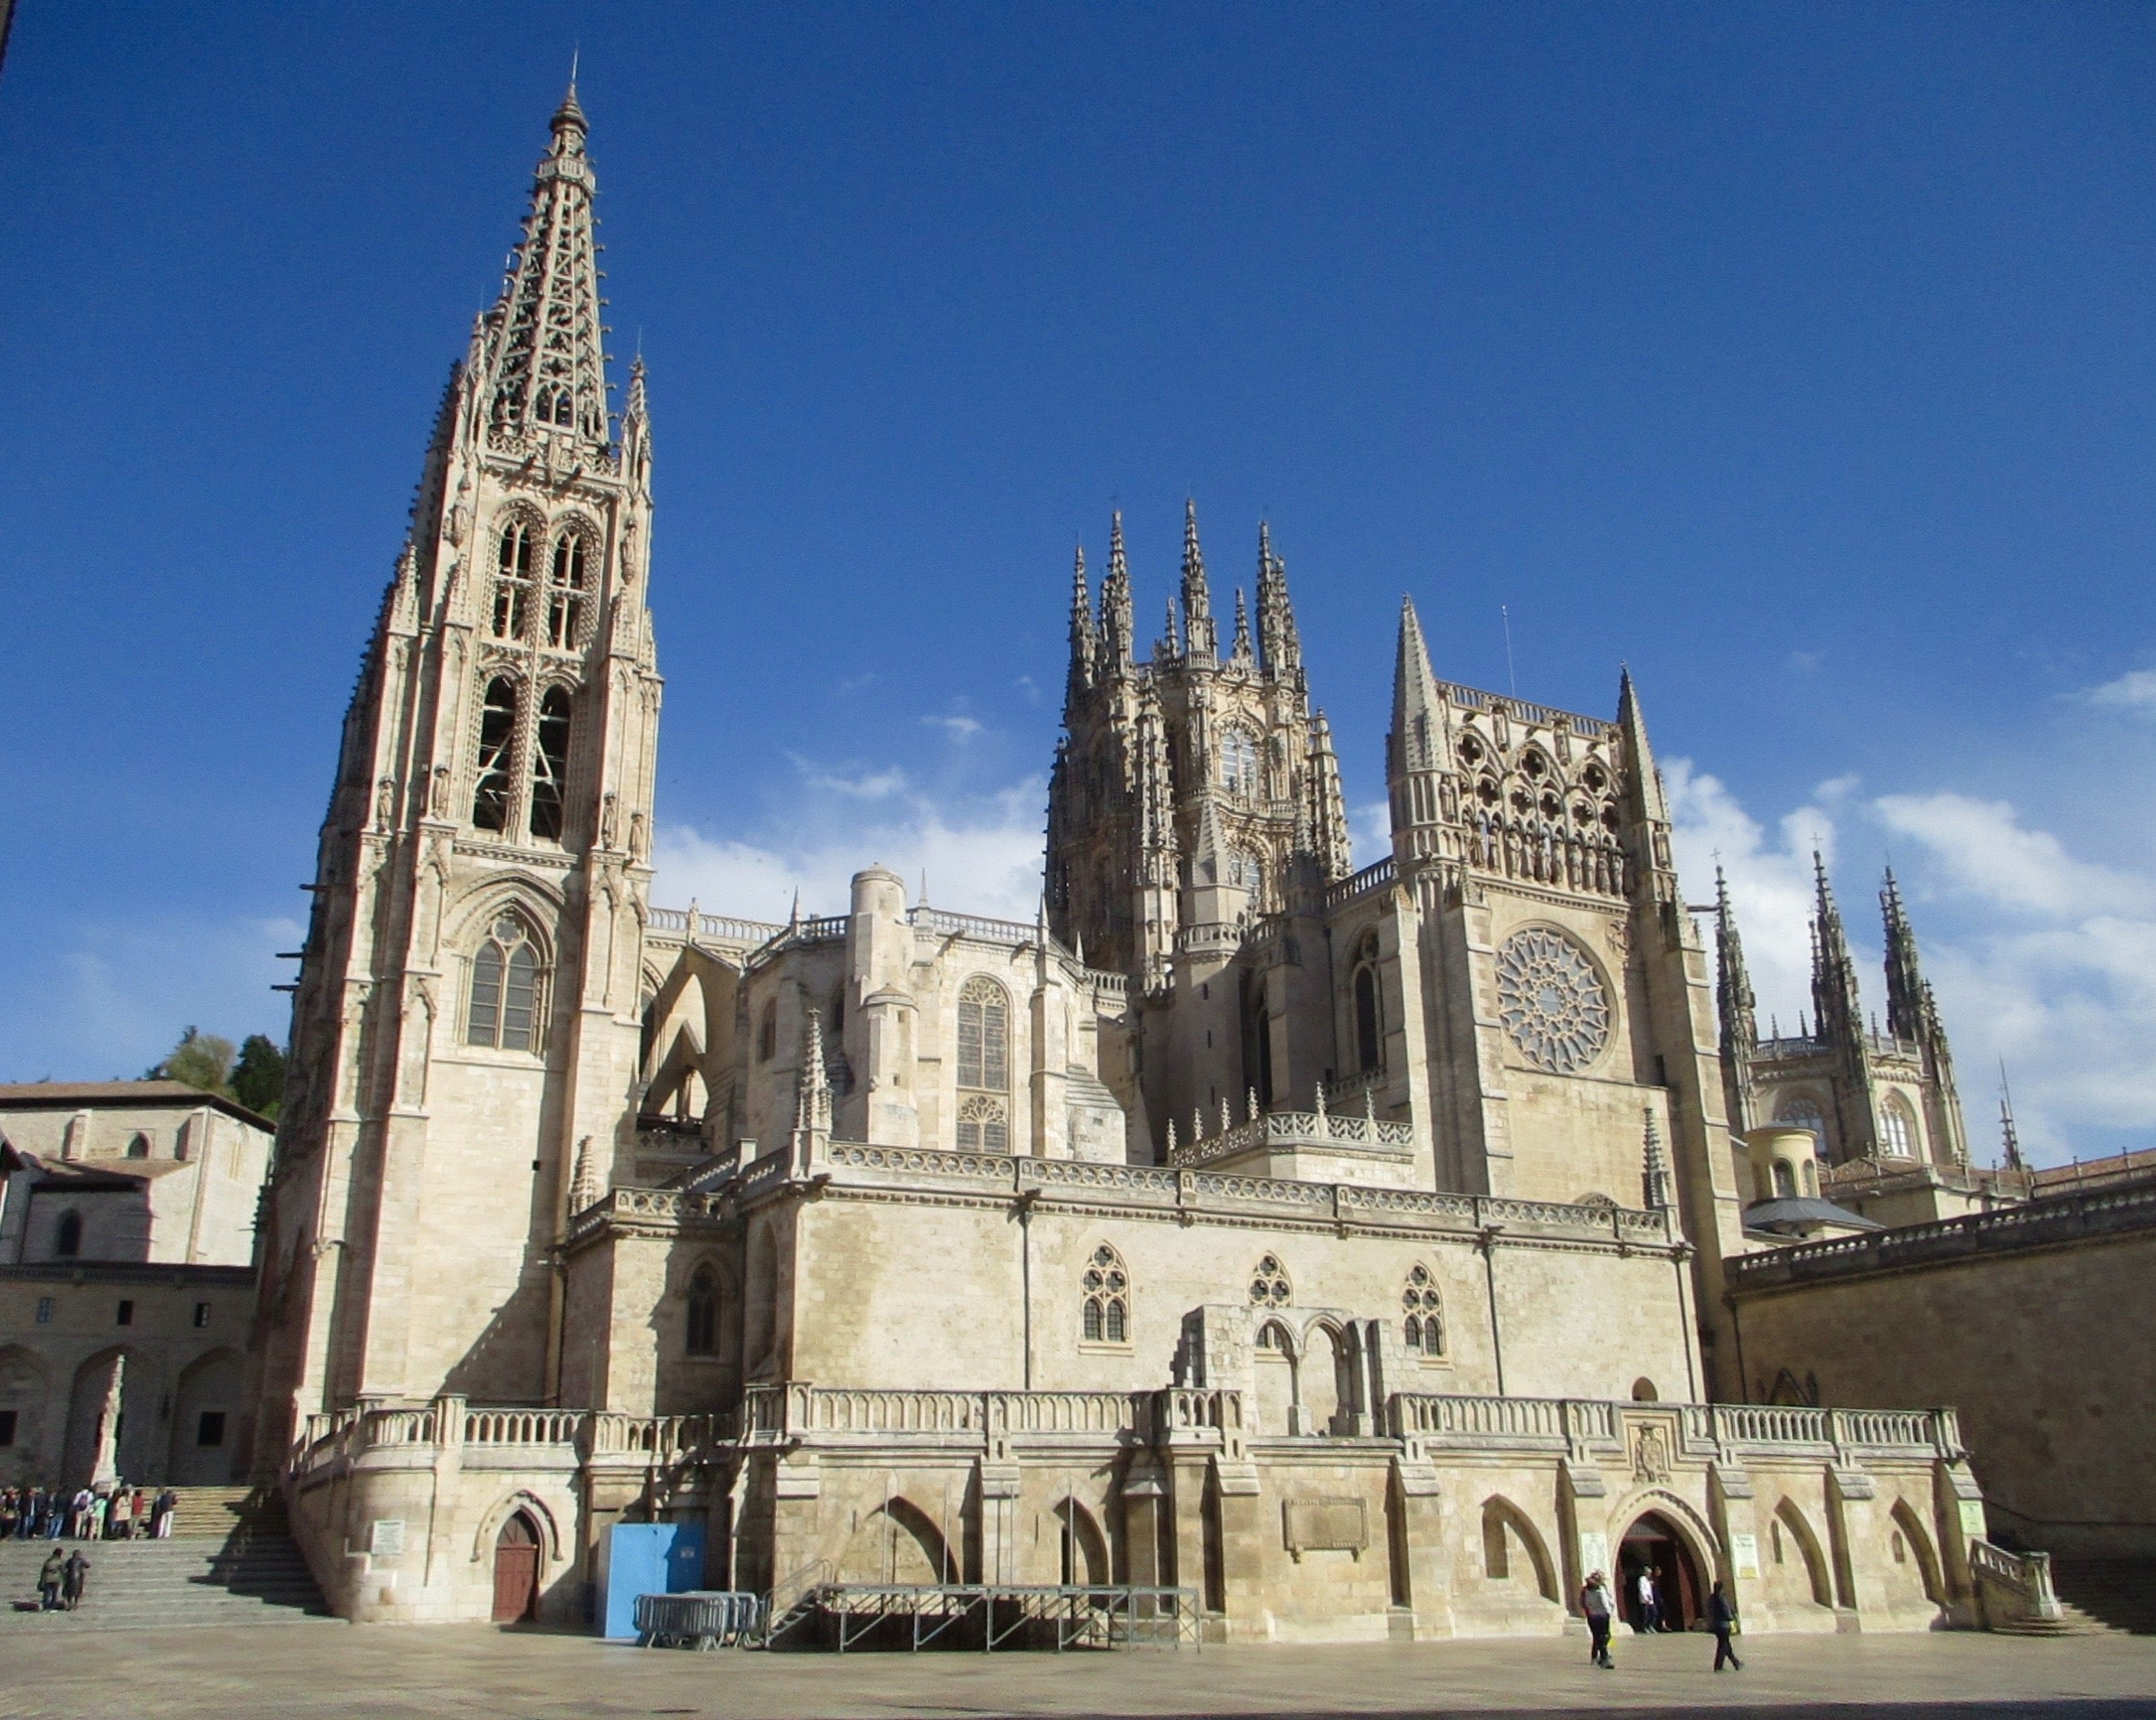 The Burgos Catedral de Santa Maria was built in 1221